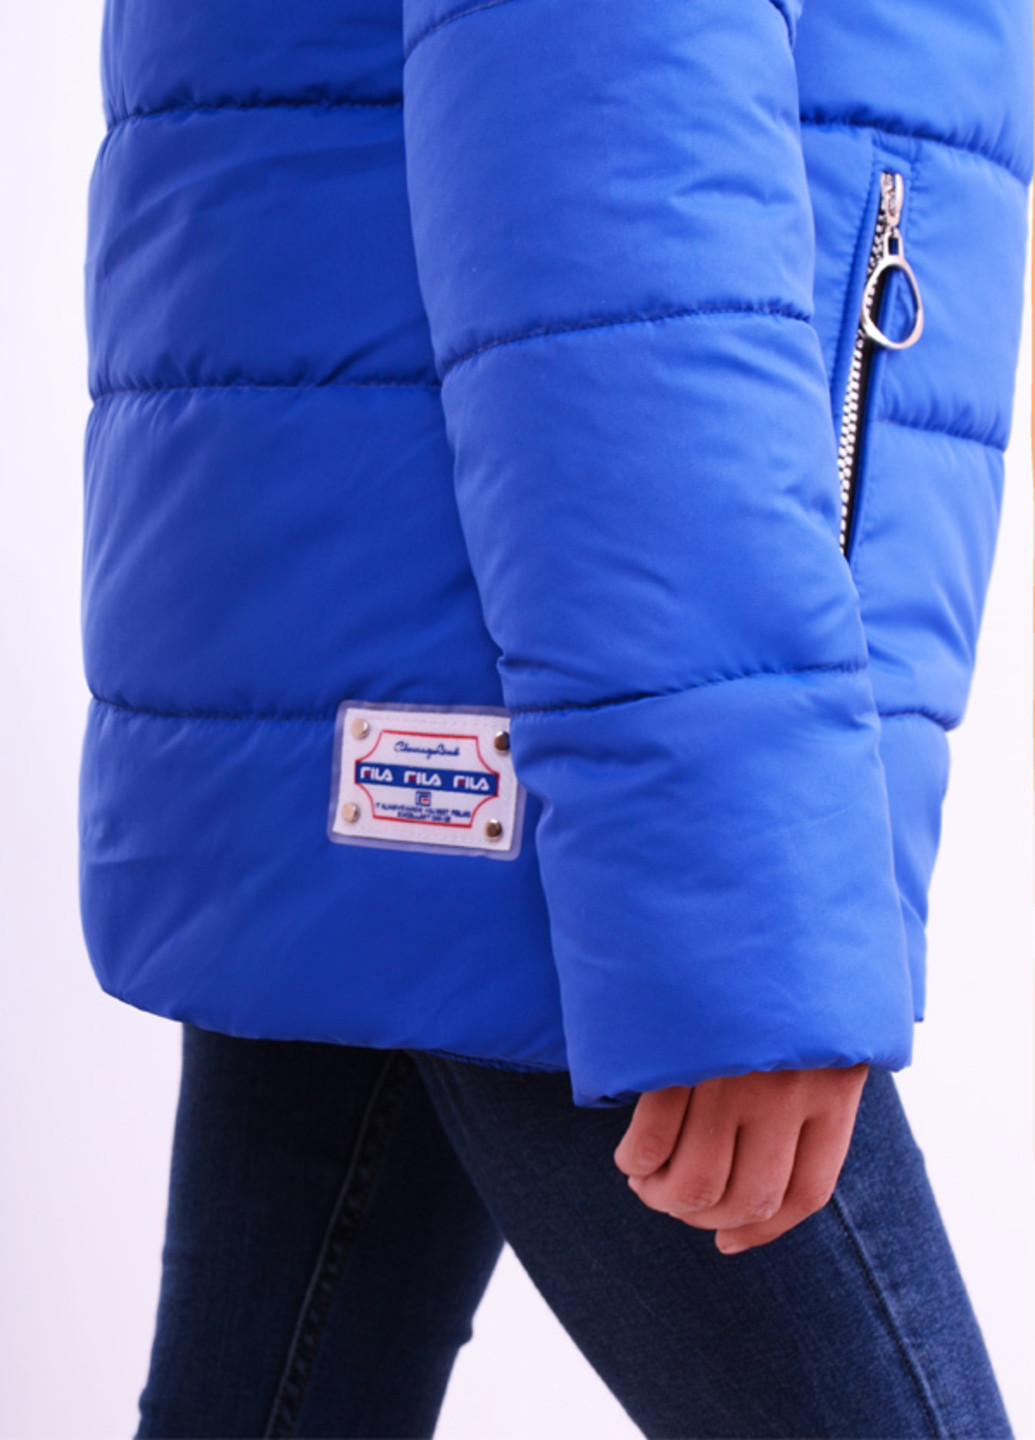 Синяя зимняя зимняя k35 Luxik удлиненная куртка